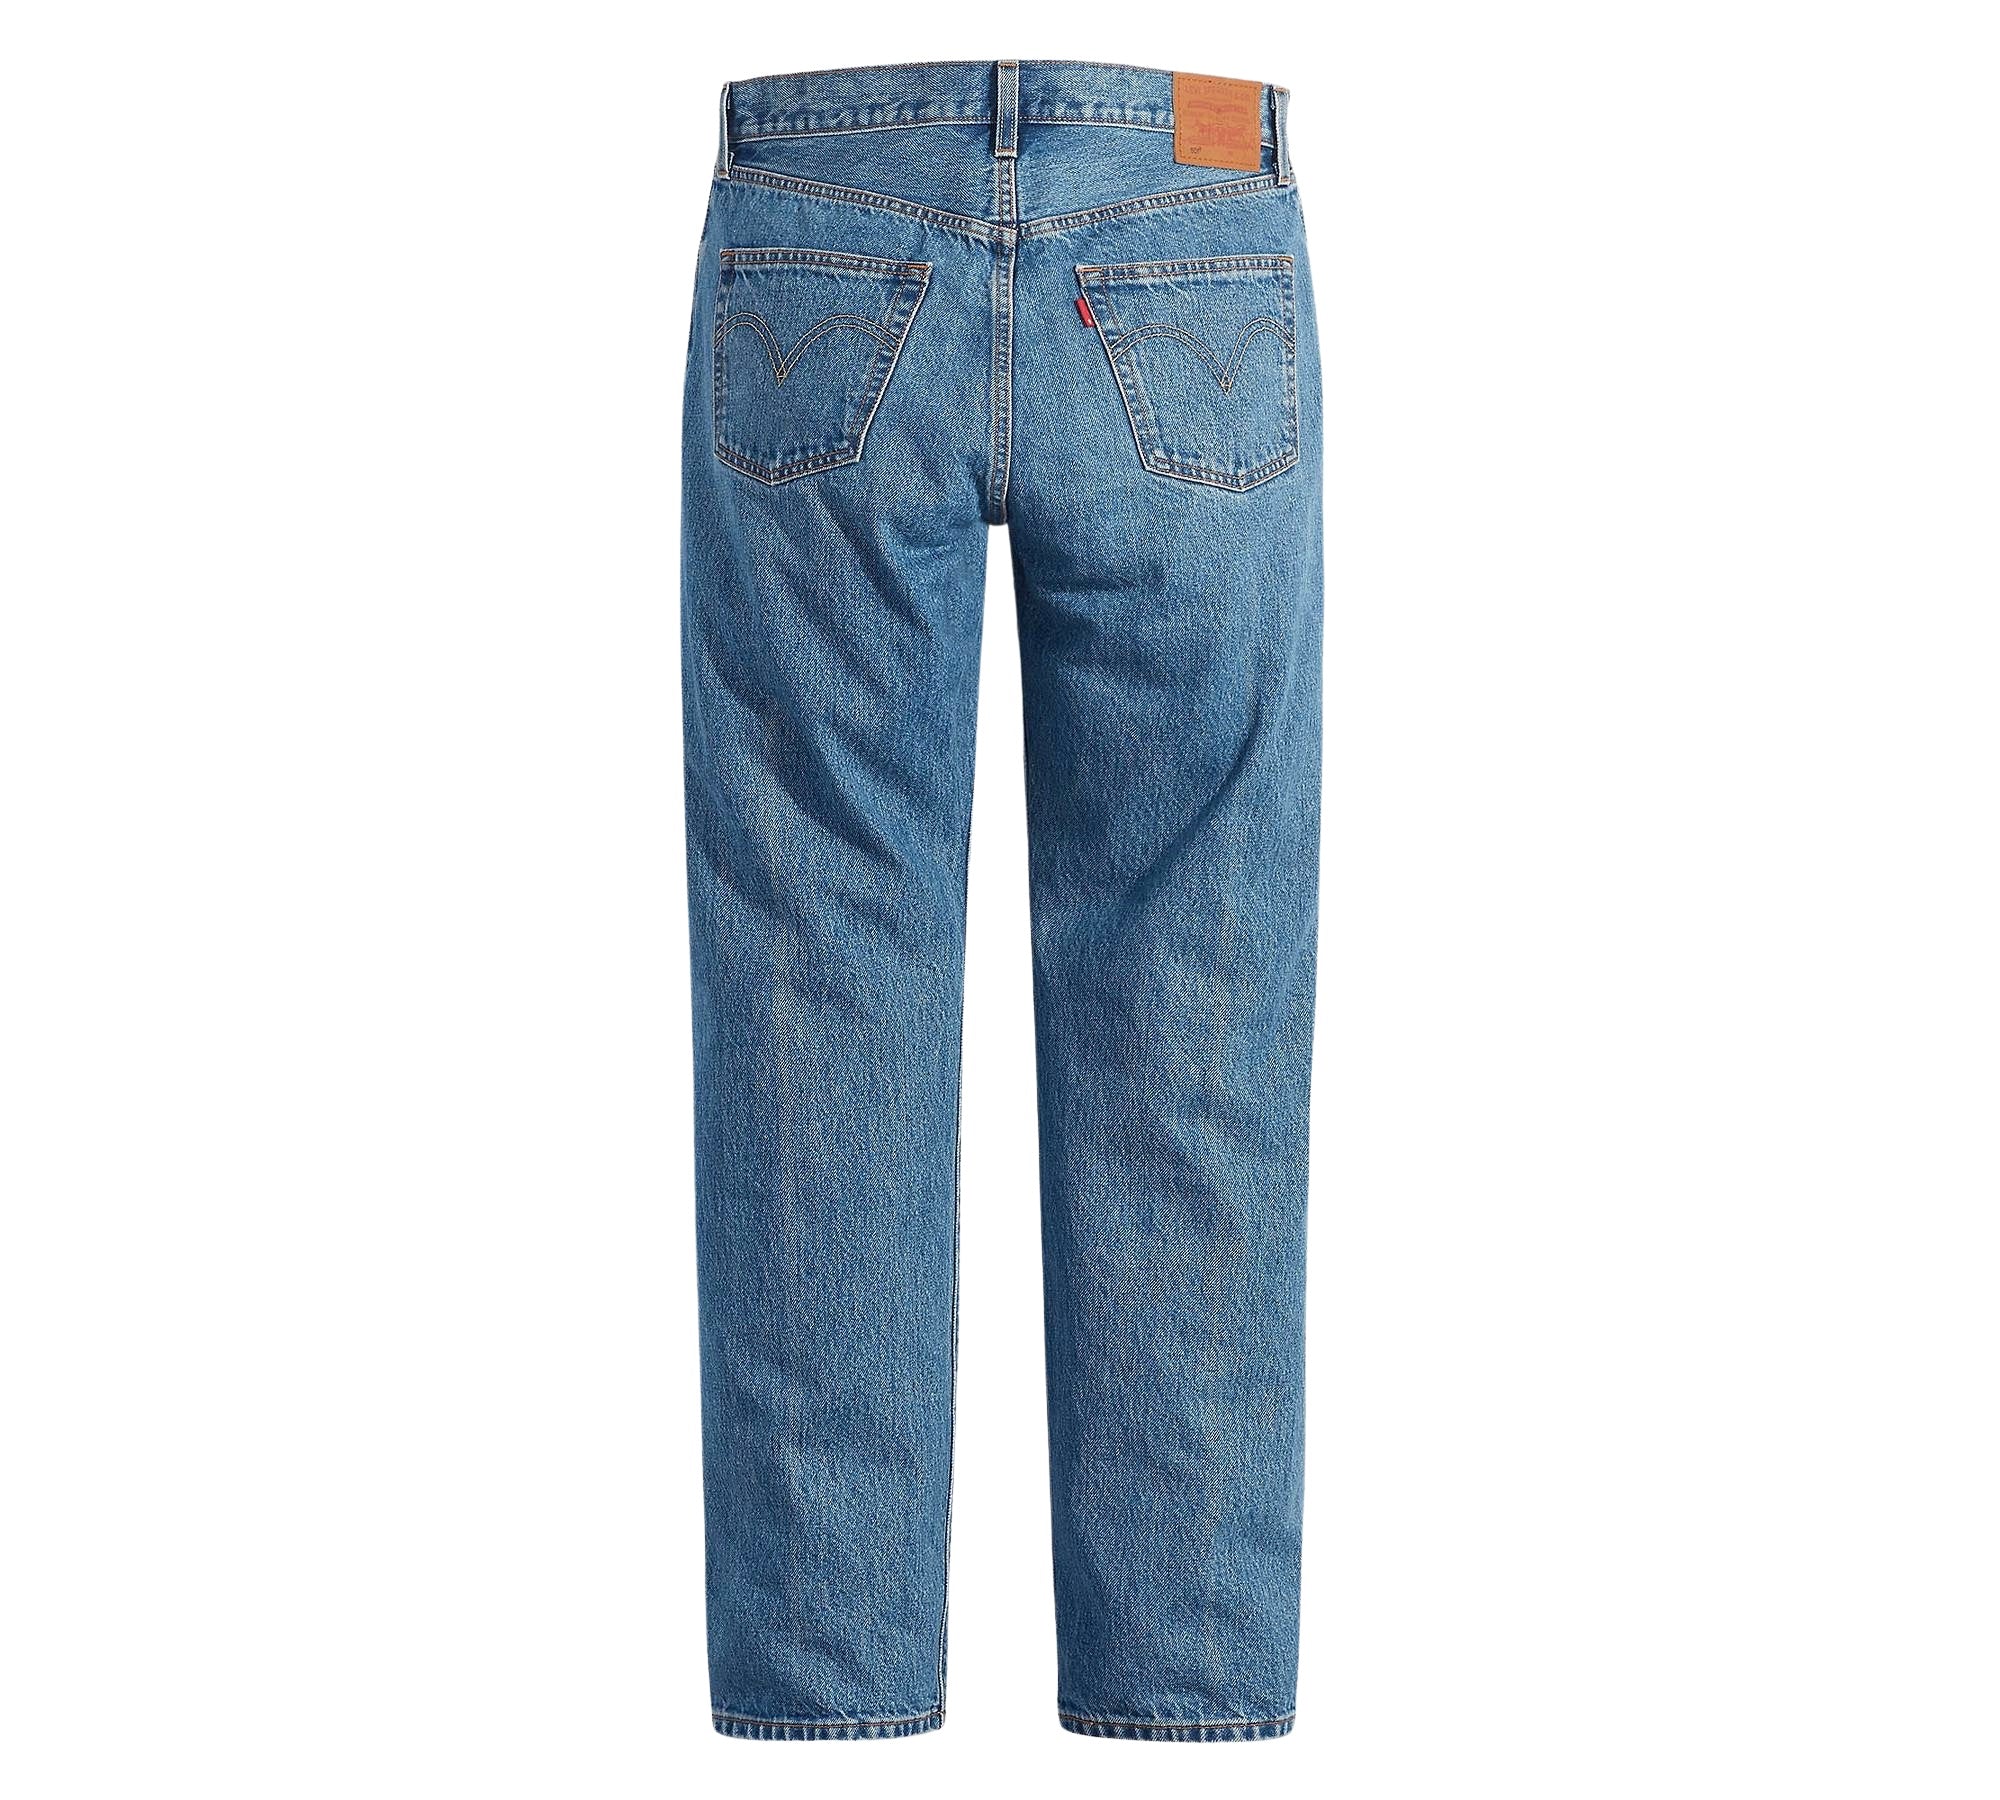 Vintage Levi's Classic Blue Jeans - Waist 36 - Length 32 - Vintage Superstore Online